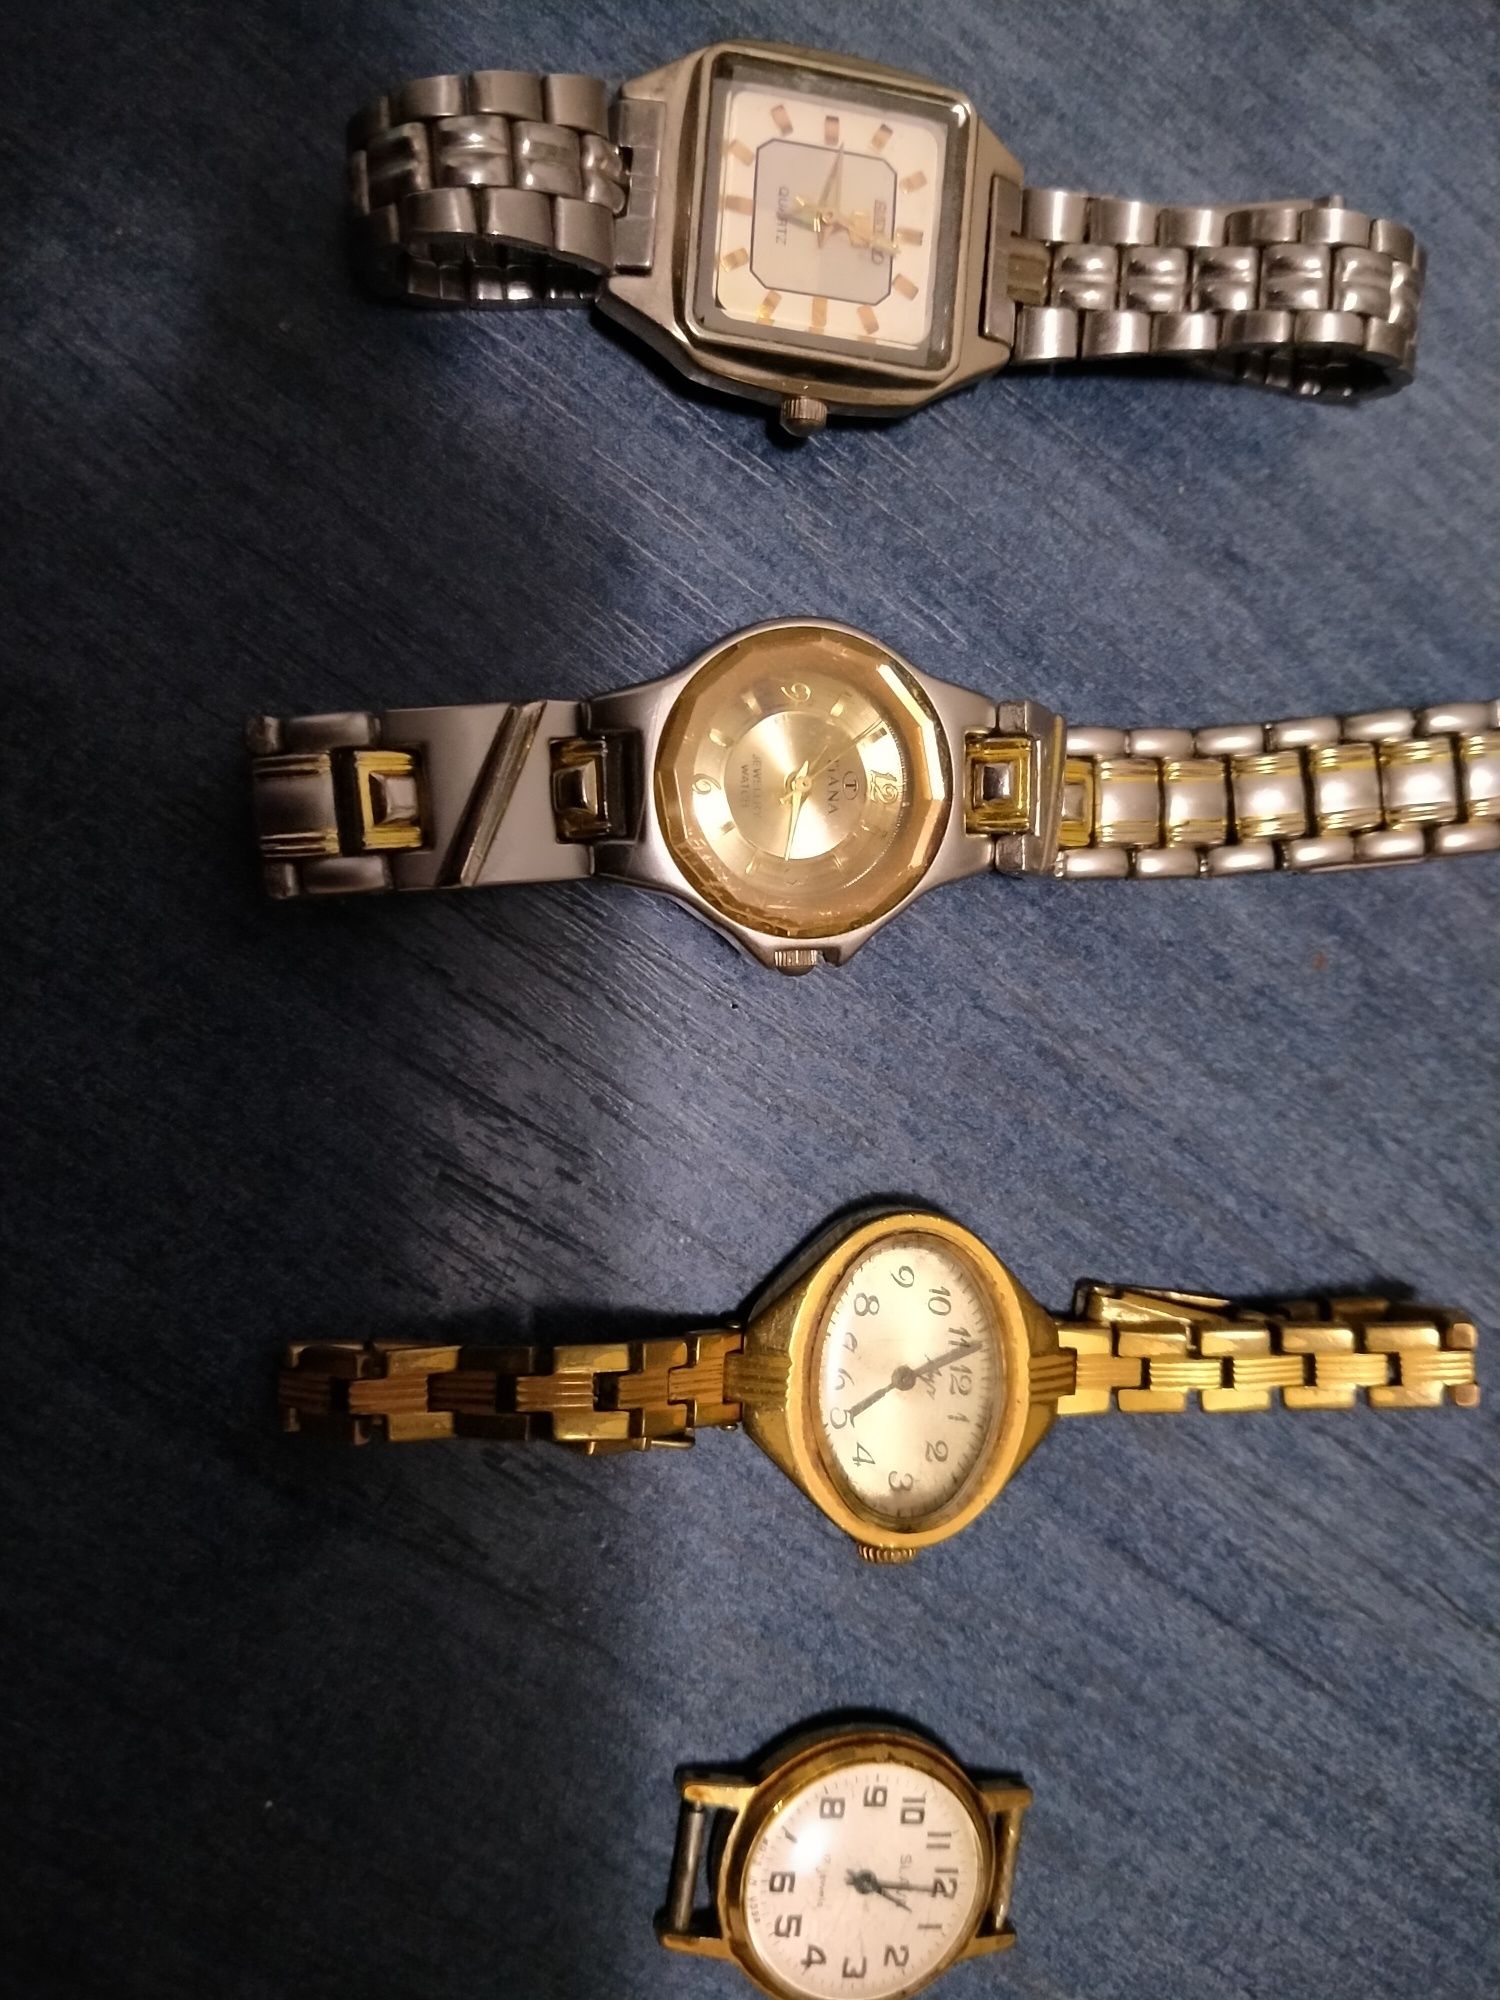 Продам женские и мужские наручные часы времён СССР - Слава, Сейко, Луч